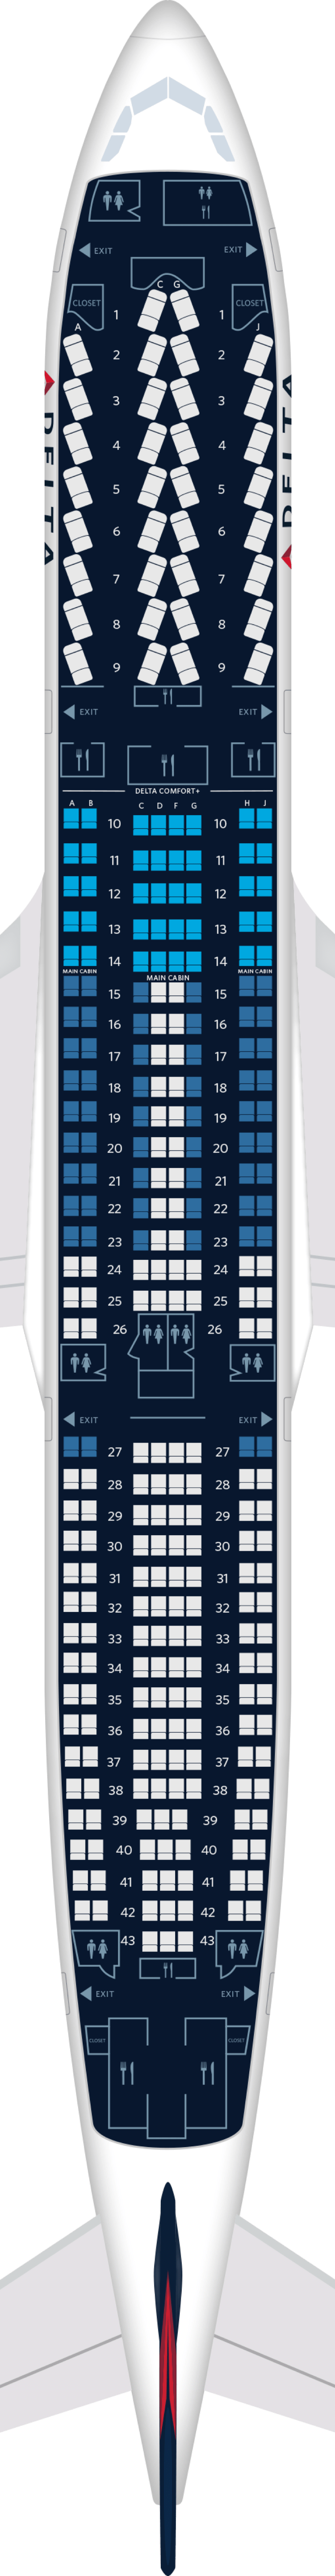 a330-243e座位图图片